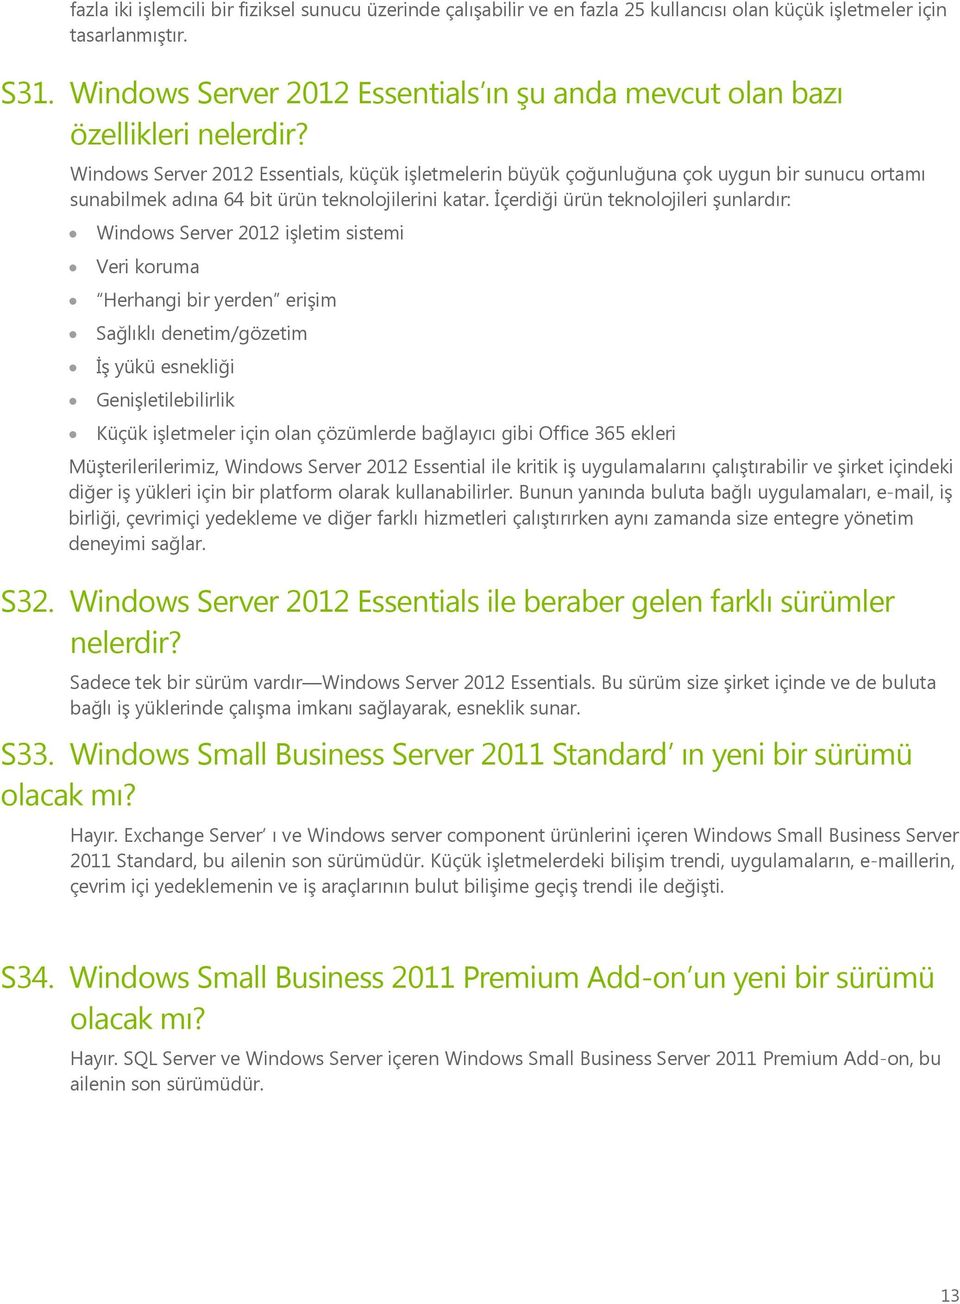 Windows Server 2012 Essentials, küçük işletmelerin büyük çoğunluğuna çok uygun bir sunucu ortamı sunabilmek adına 64 bit ürün teknolojilerini katar.